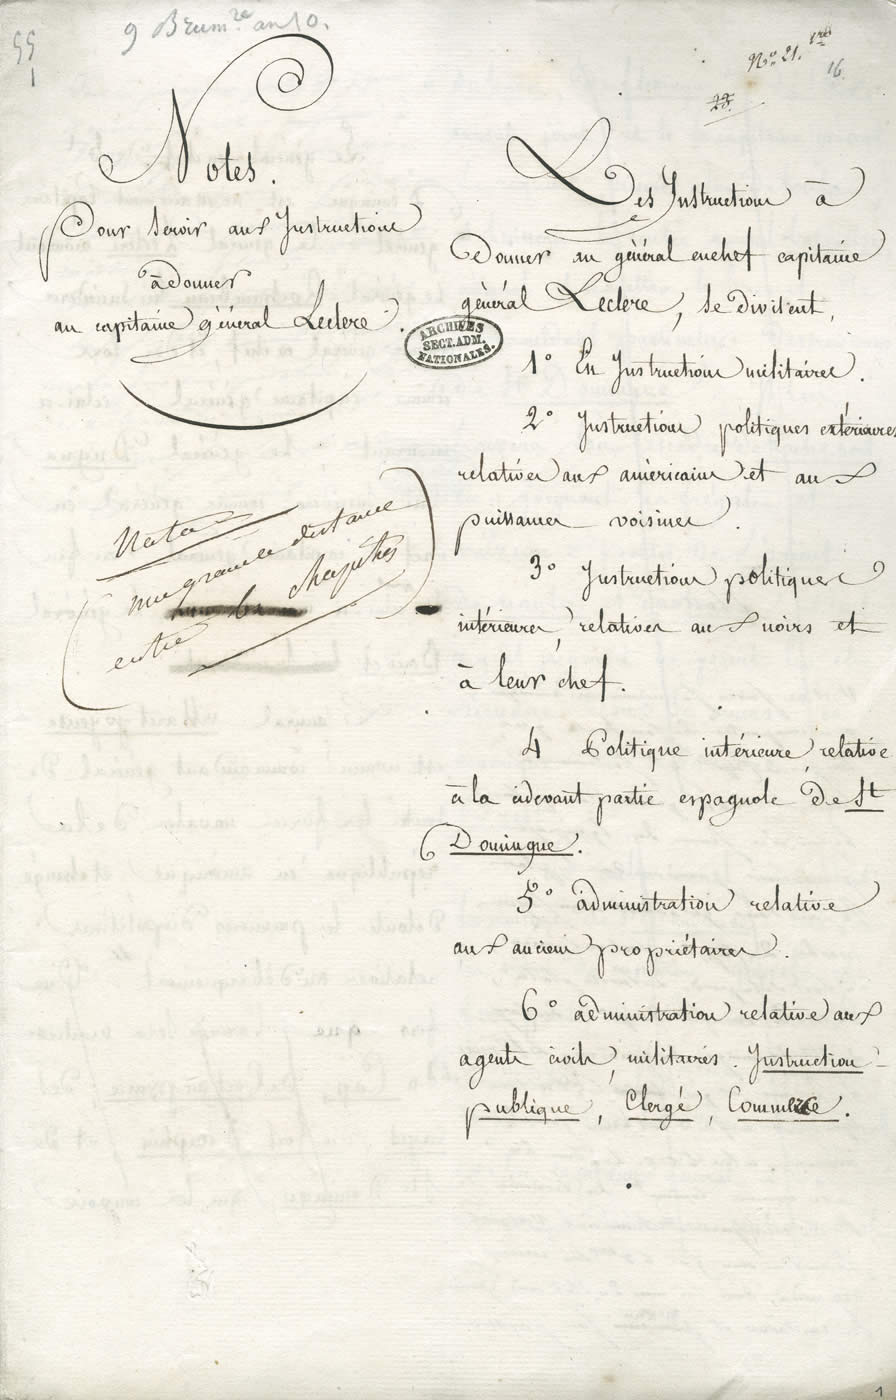 Instructions secrètes données par Bonaparte pour l'expédition Leclerc à Saint-Domingue.